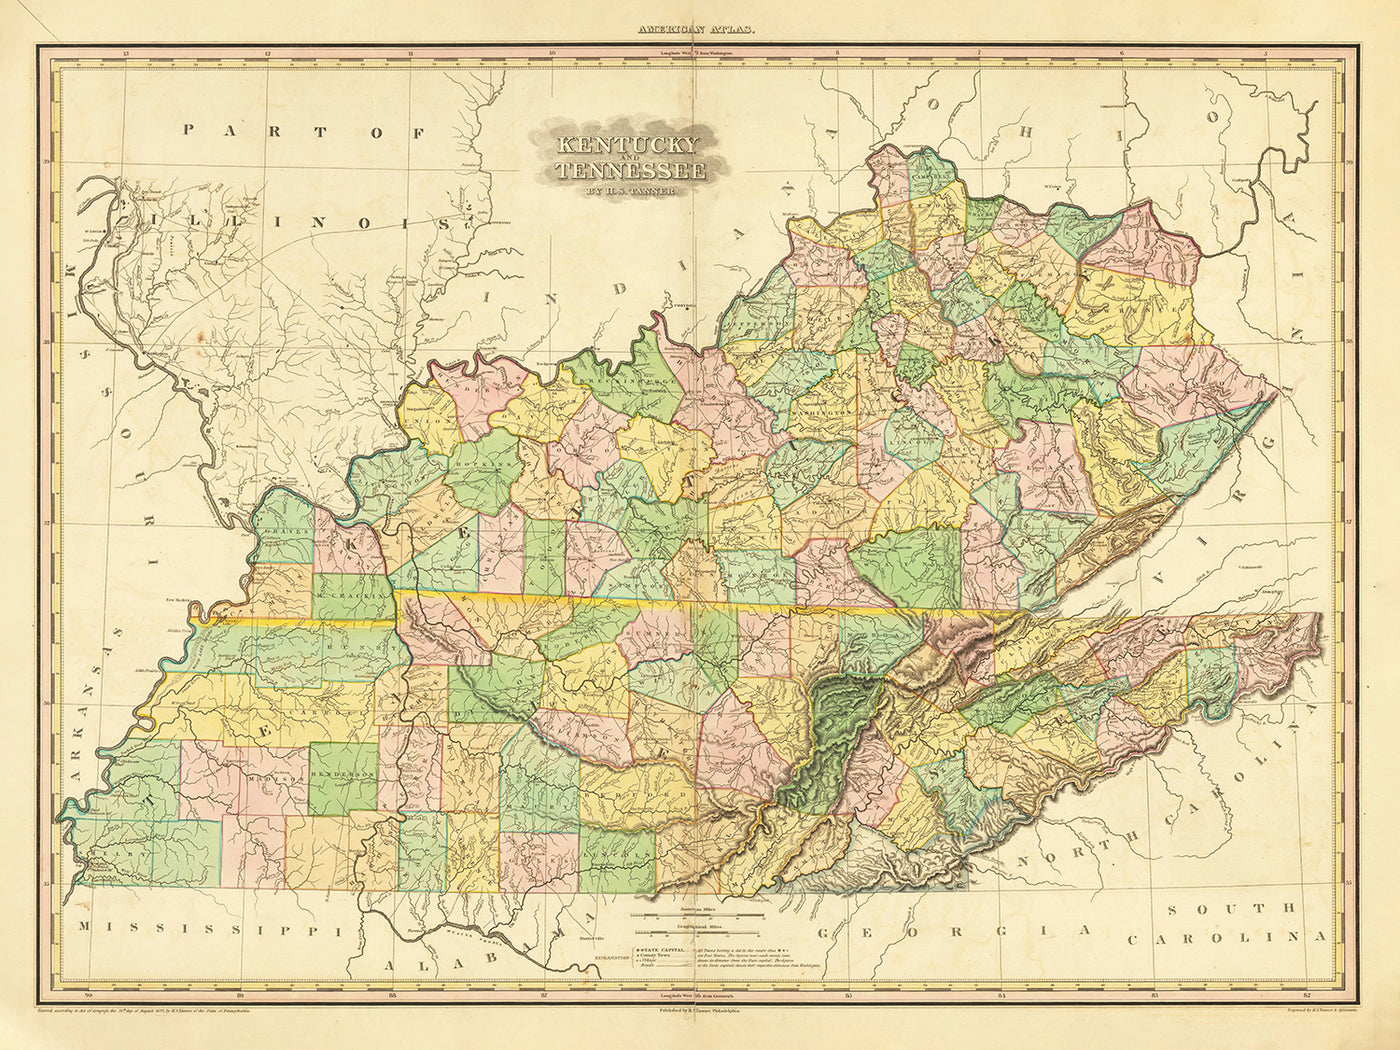 Alte Karte von Kentucky und Tennessee von H. S. Tanner, 1820, mit Nashville, Louisville, Lexington, Knoxville und Chattanooga